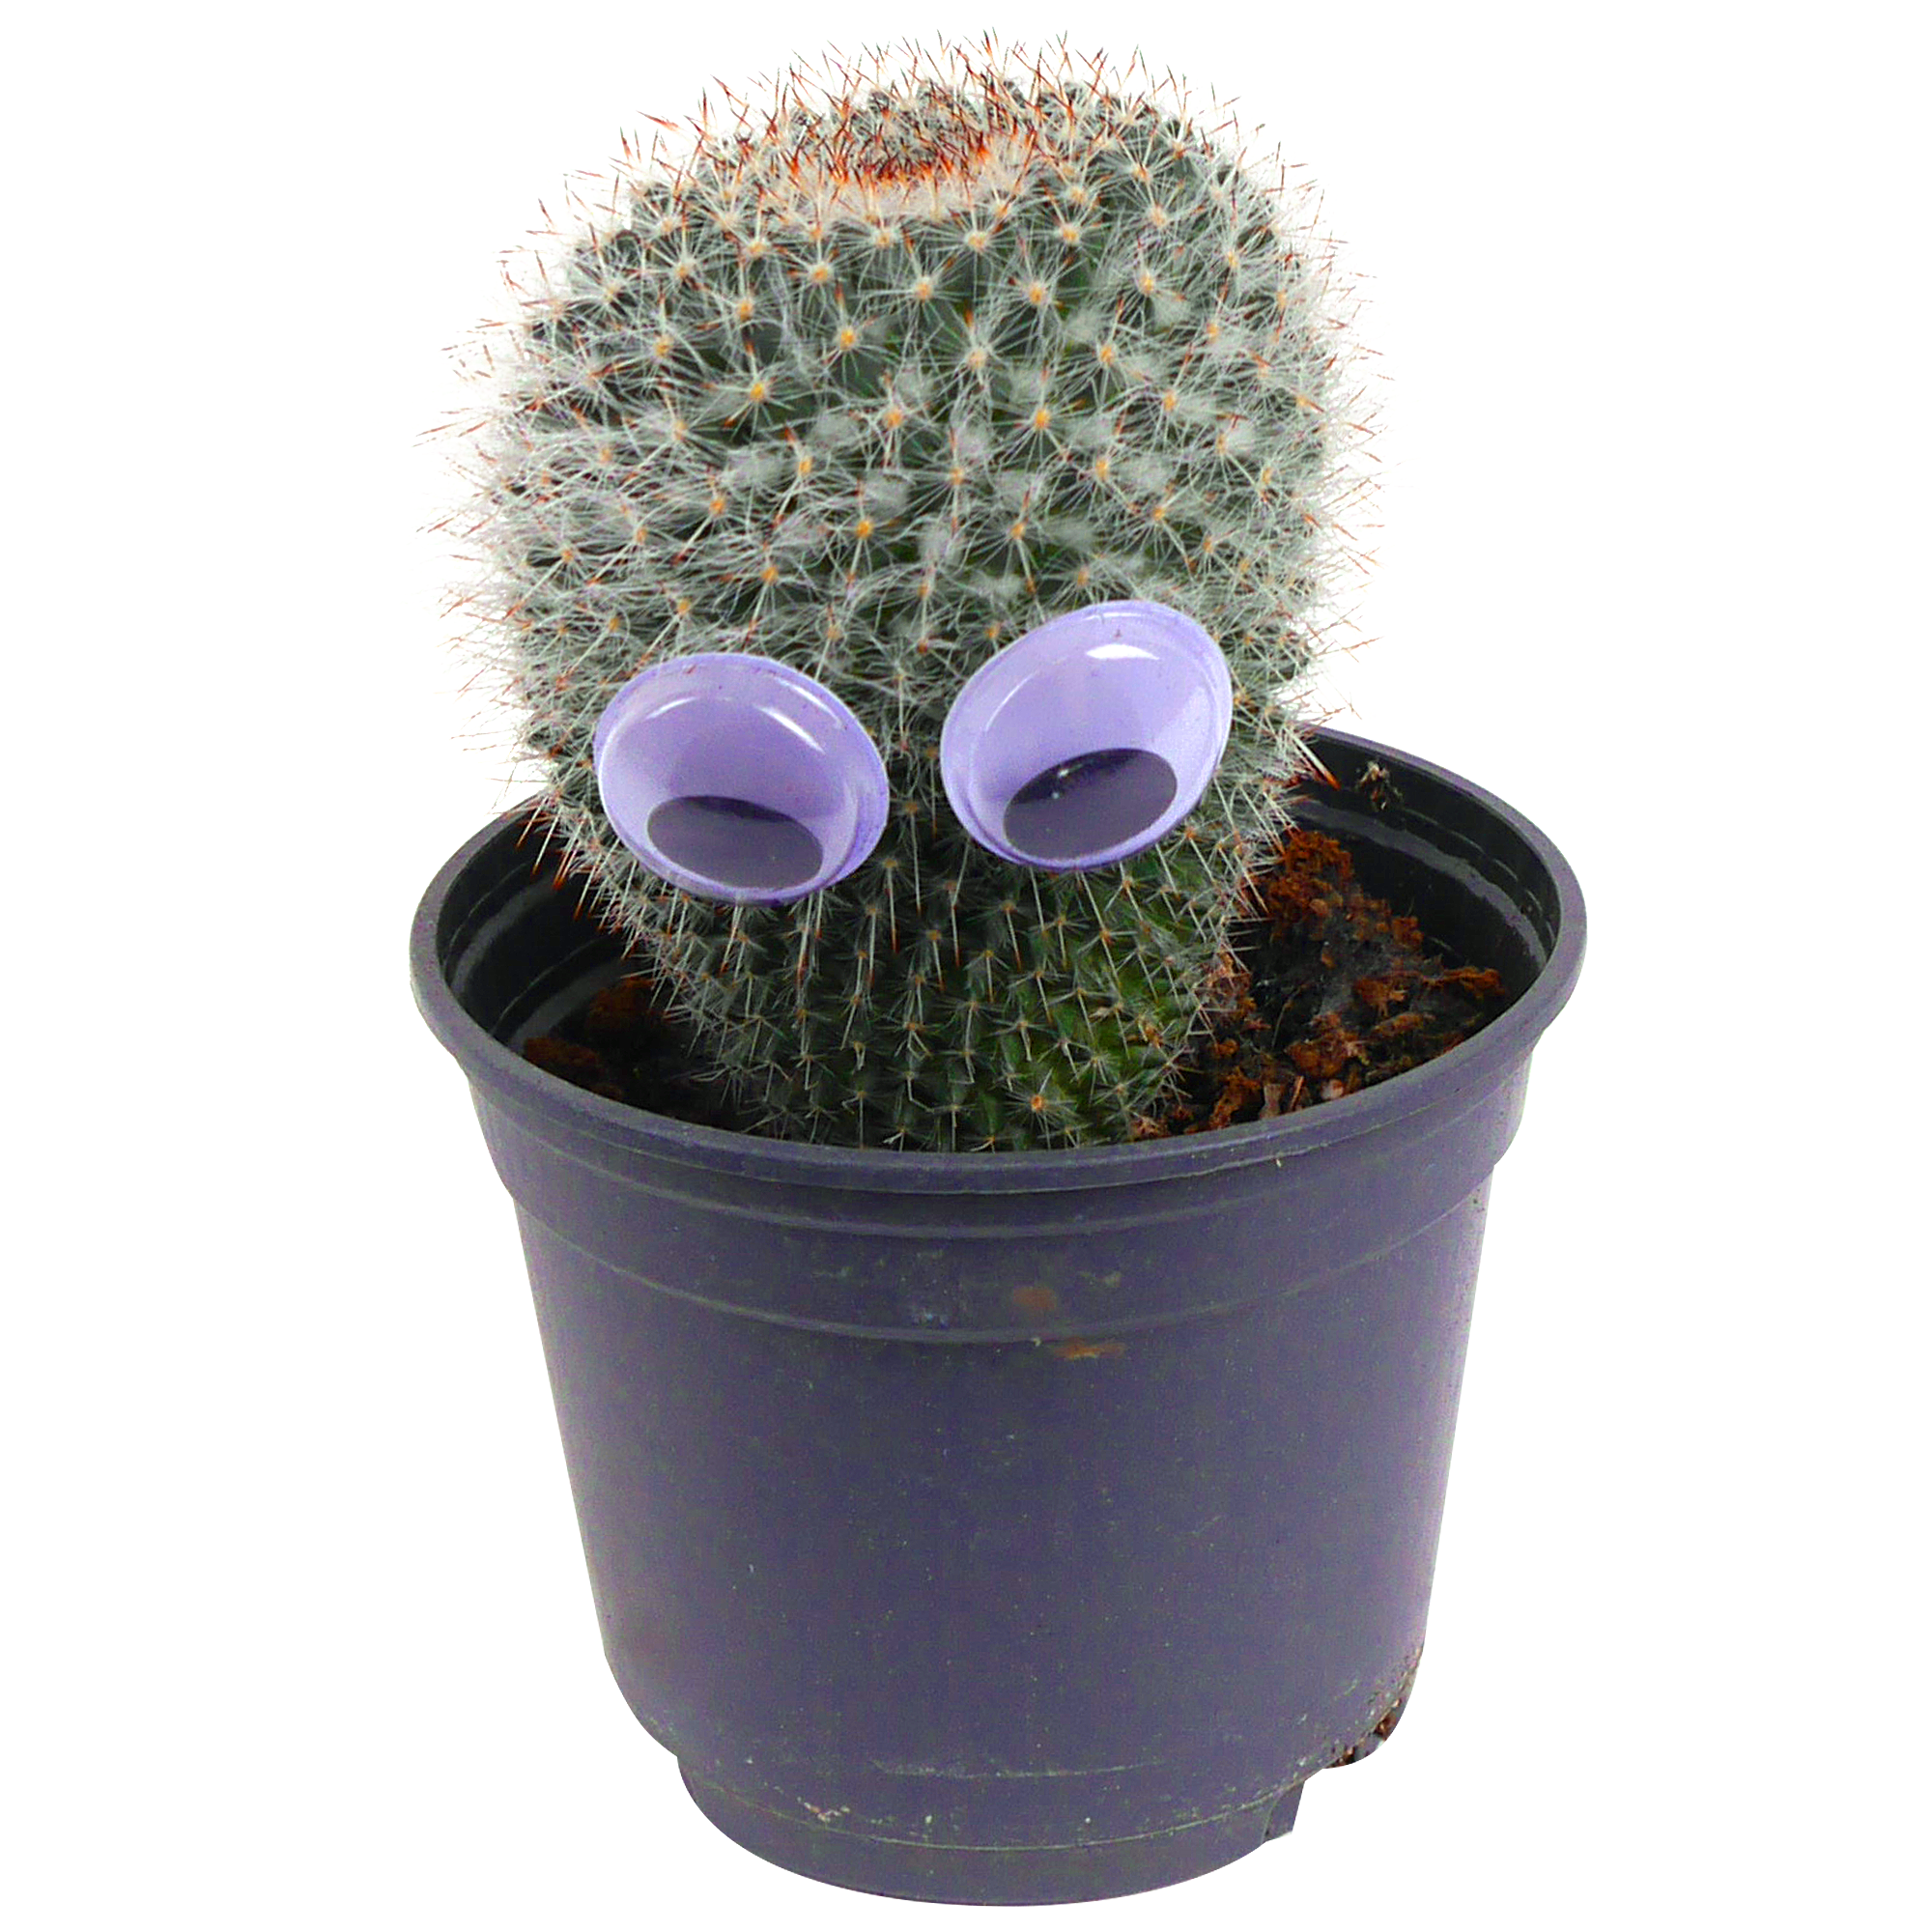 Kaktus mit Augen 9 cm Topf + product picture